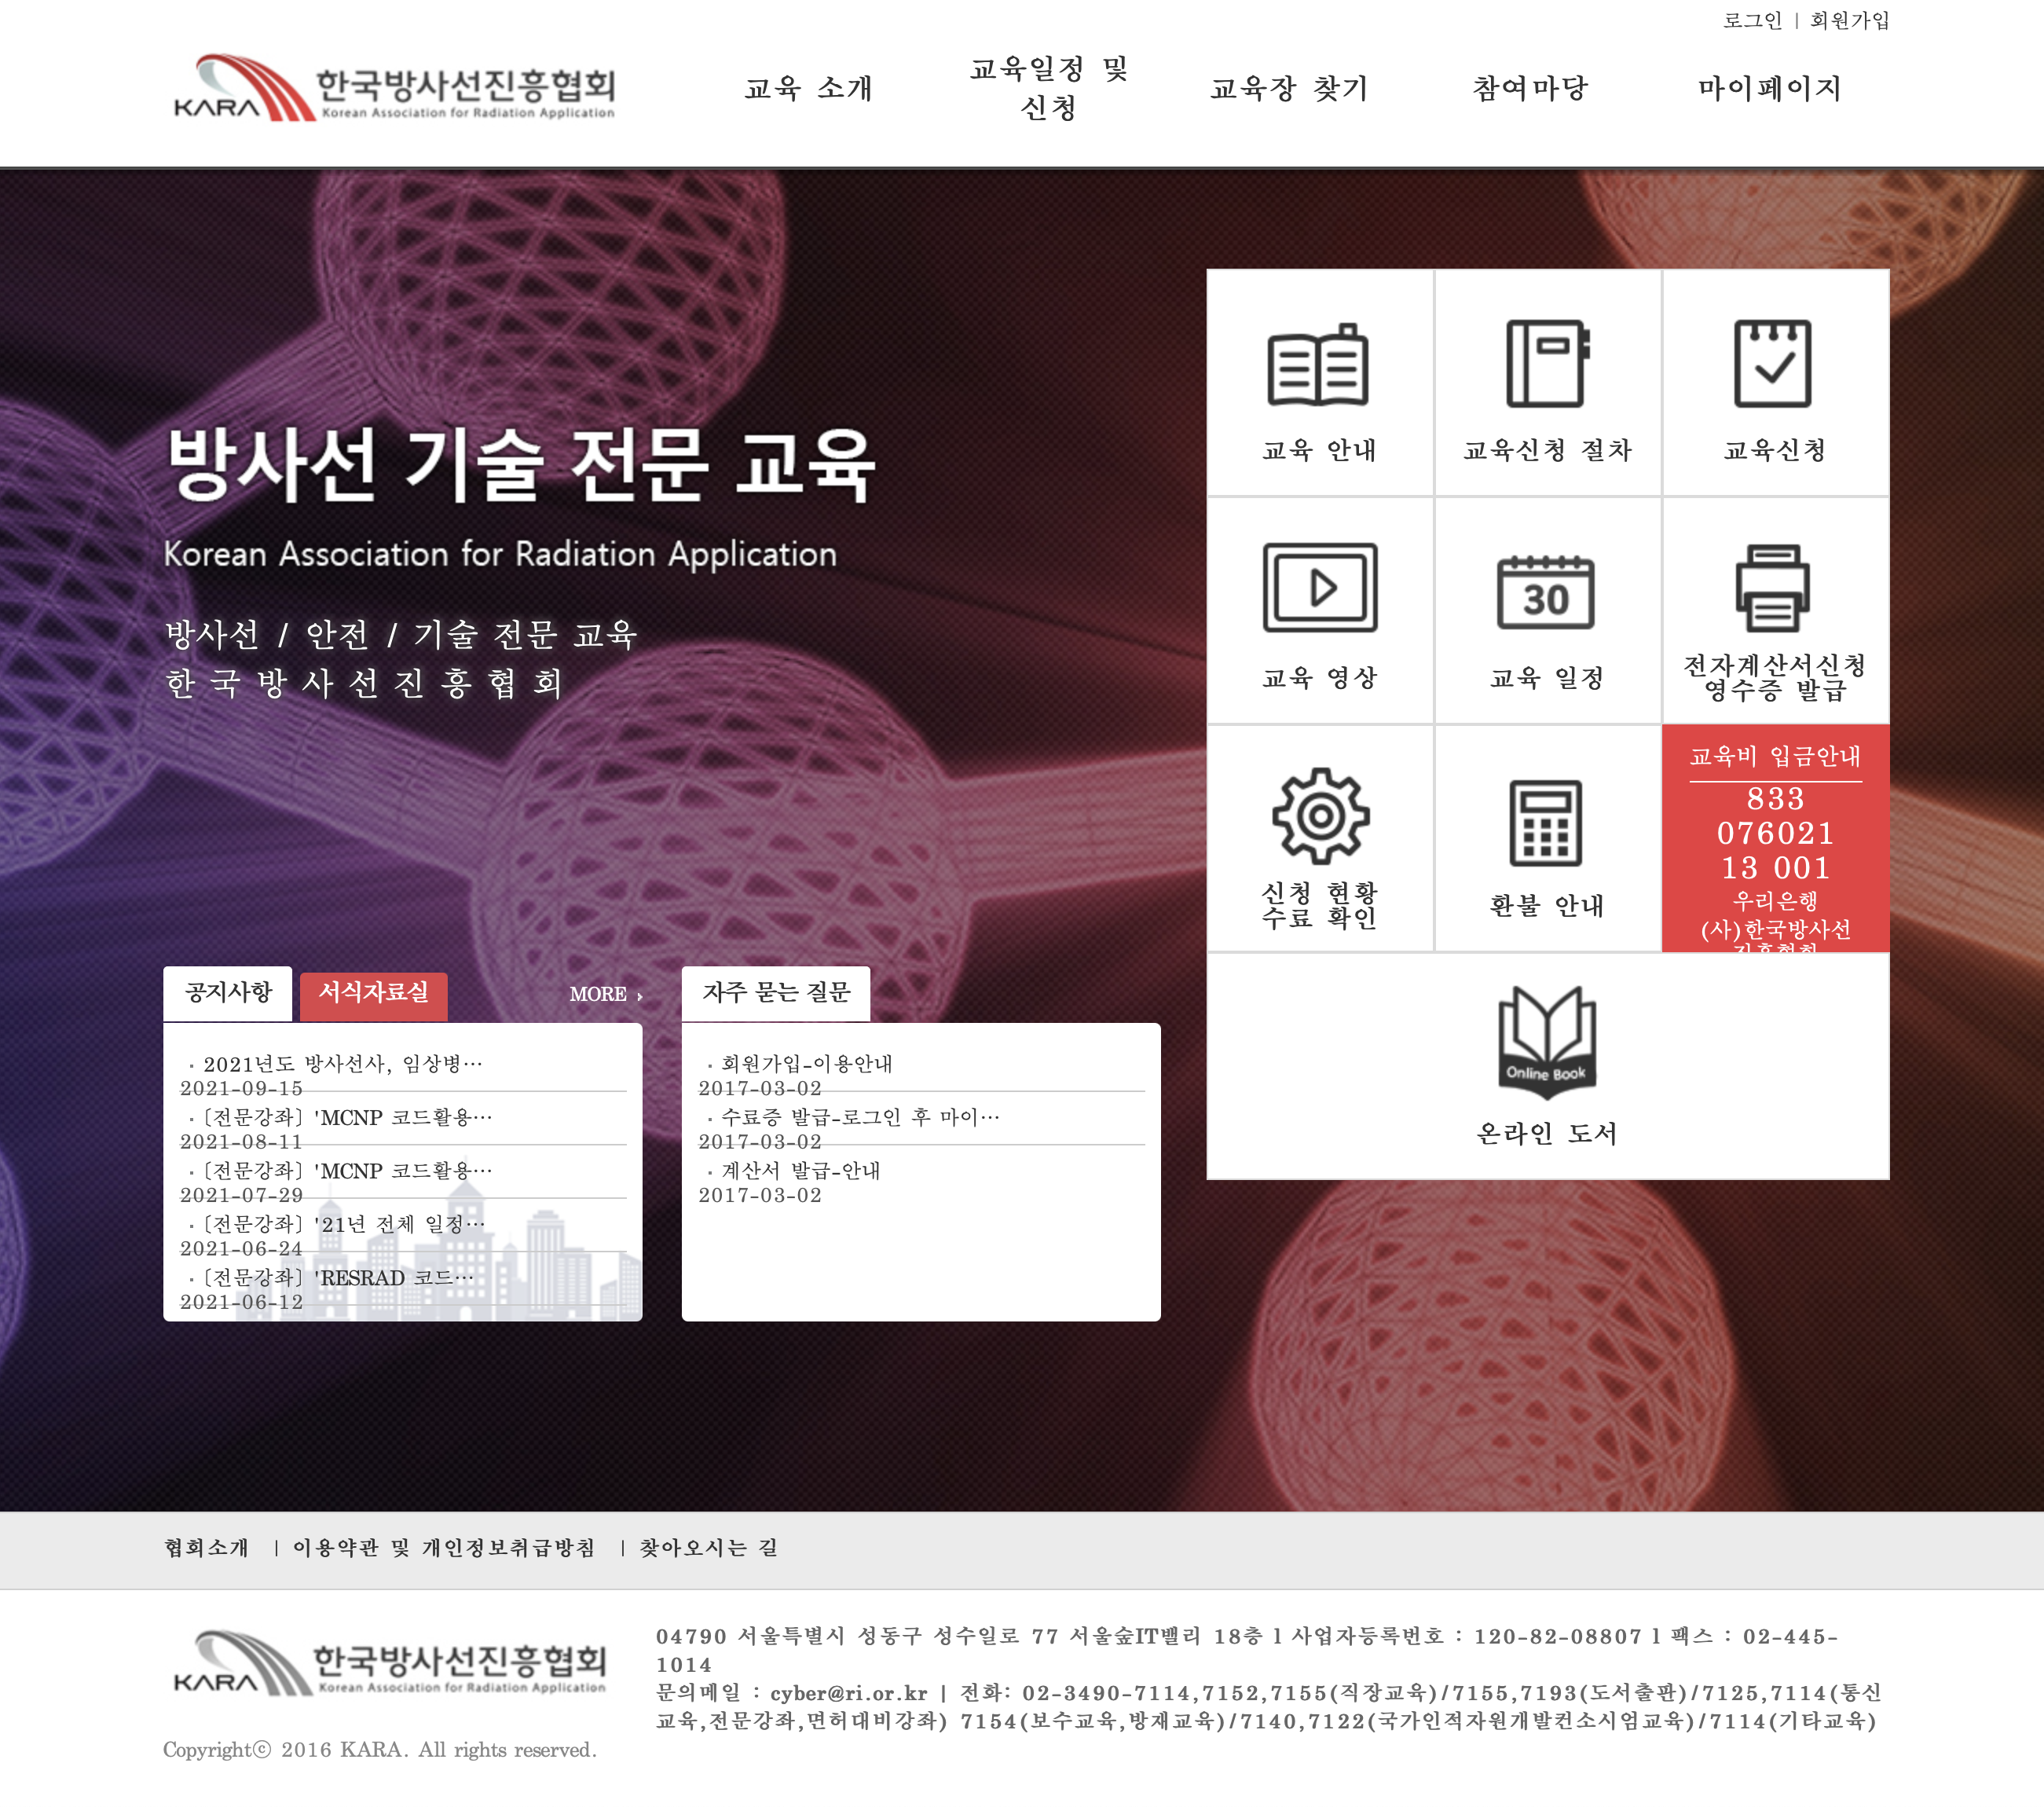 한국방사선진흥협회 교육시스템 보수교육 (cyber.ri.or.kr)